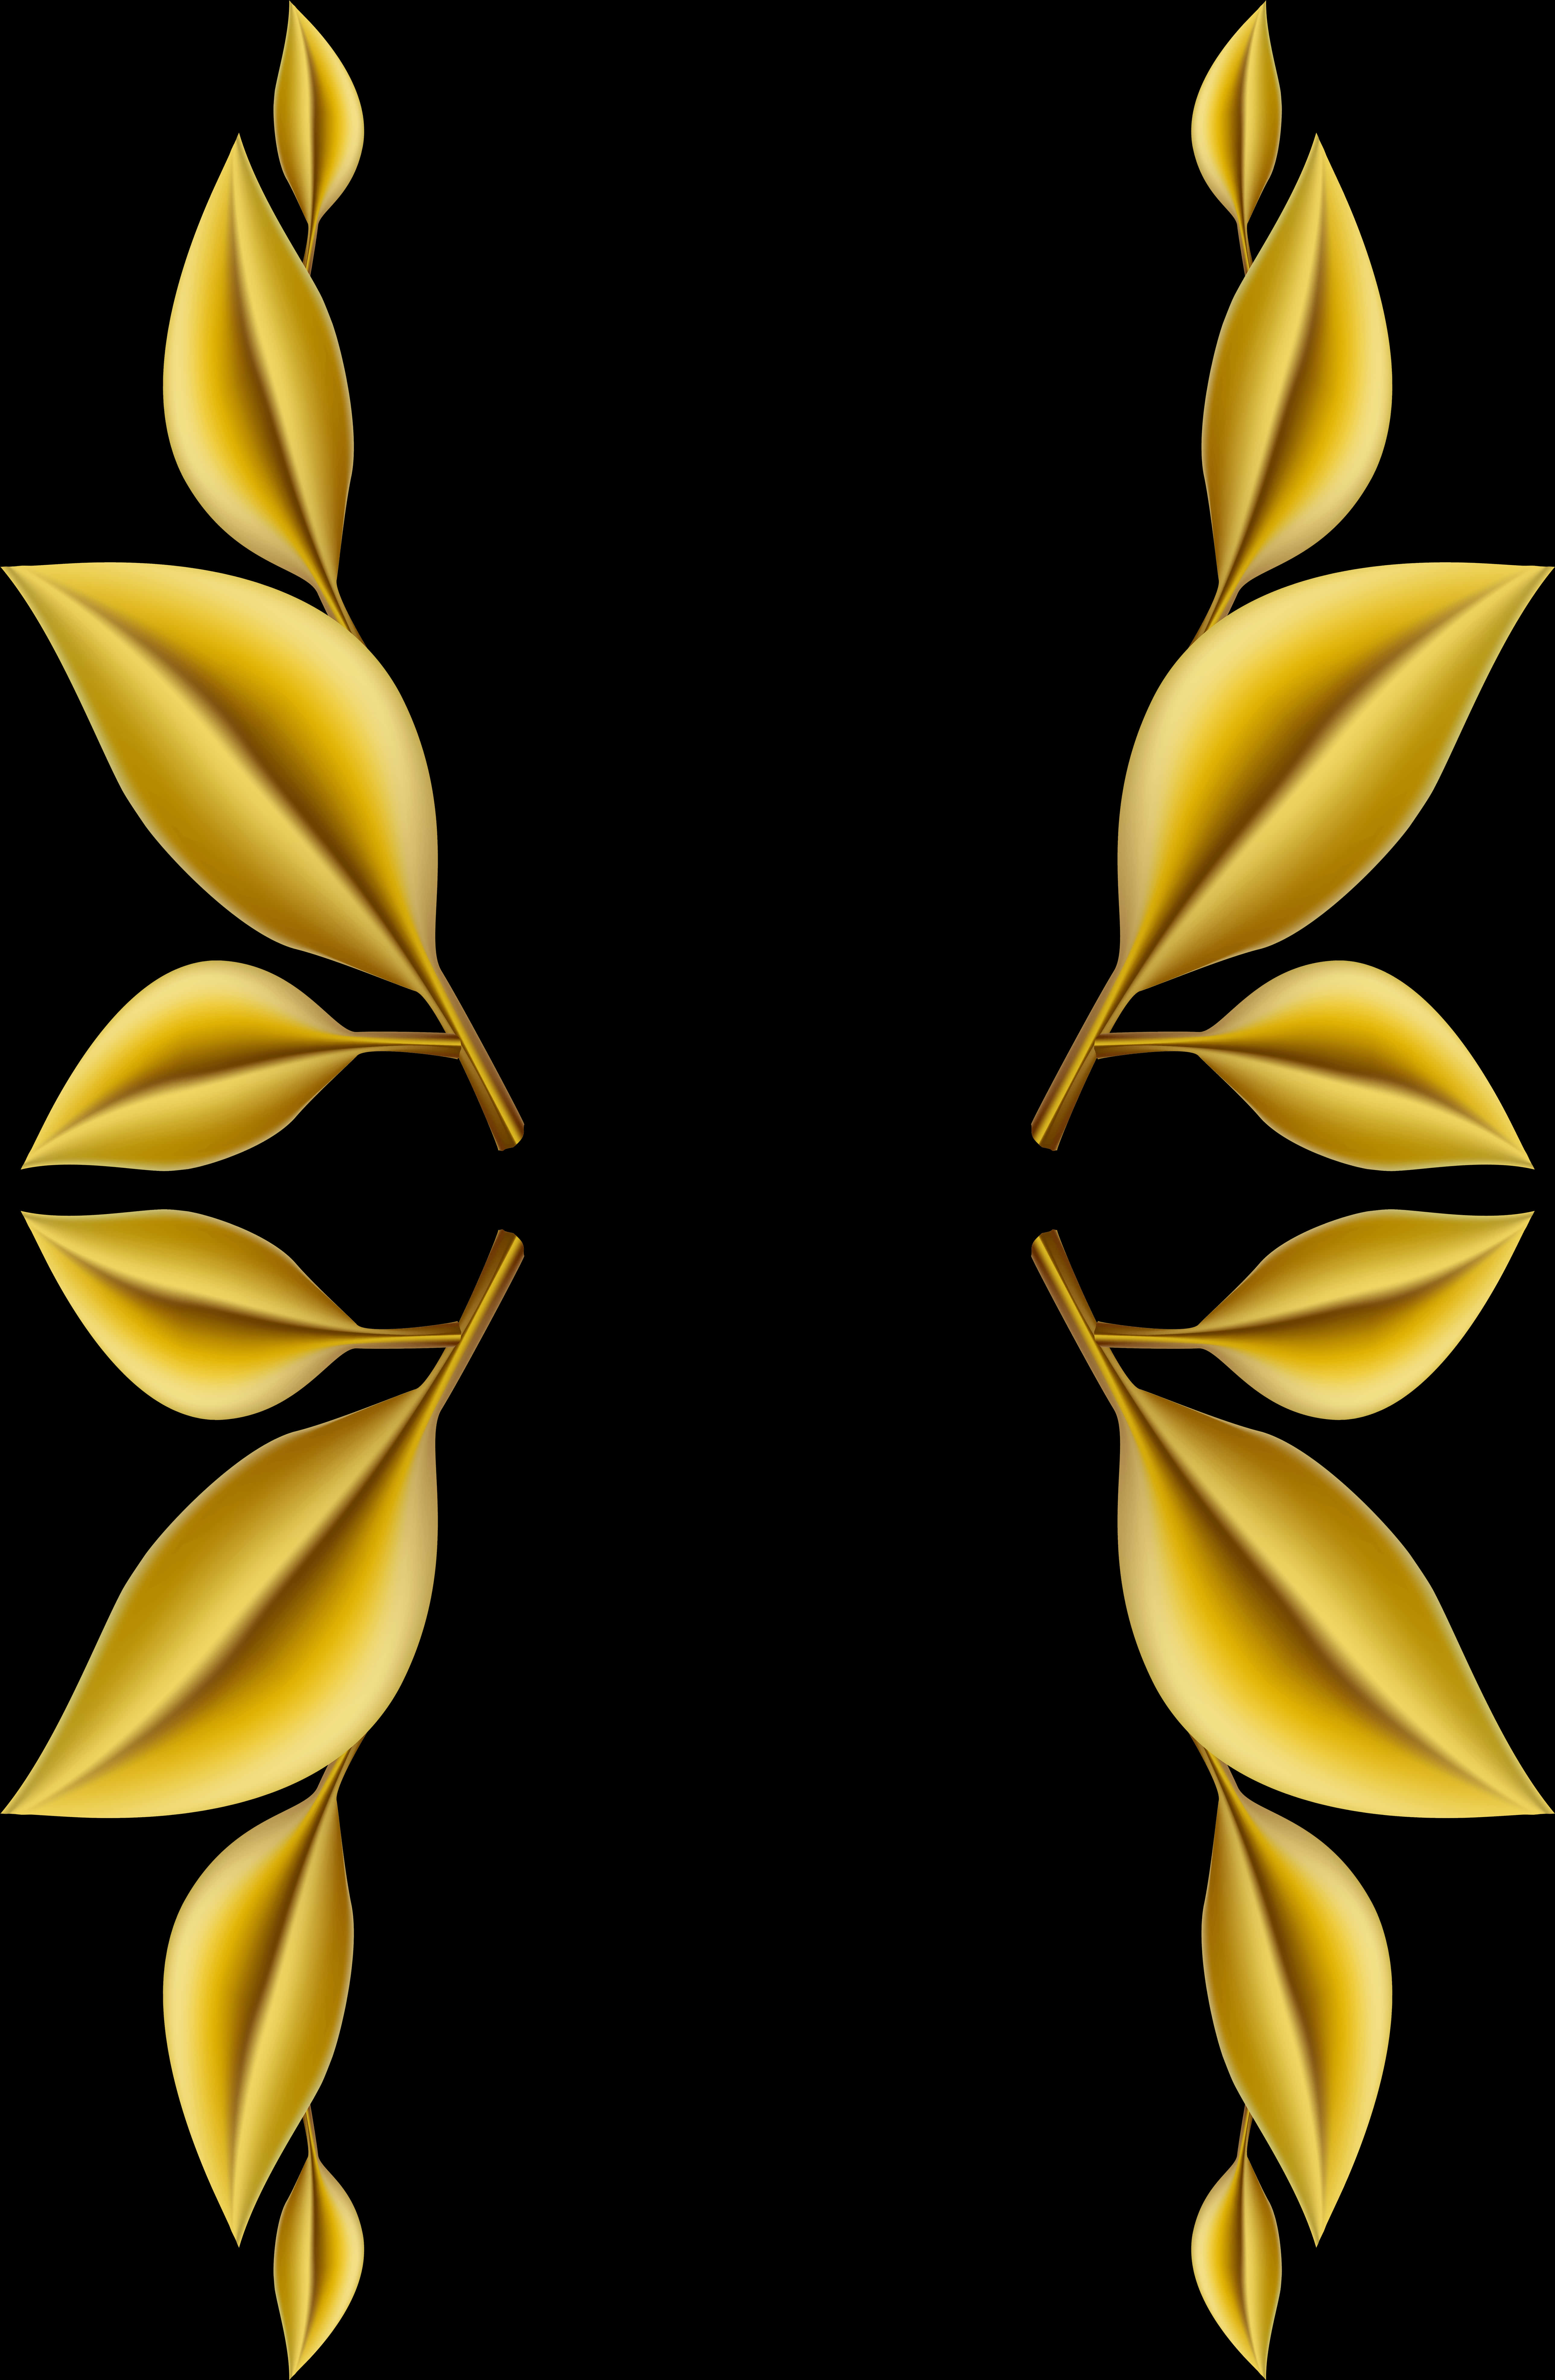 Golden Leaf Design Border PNG image